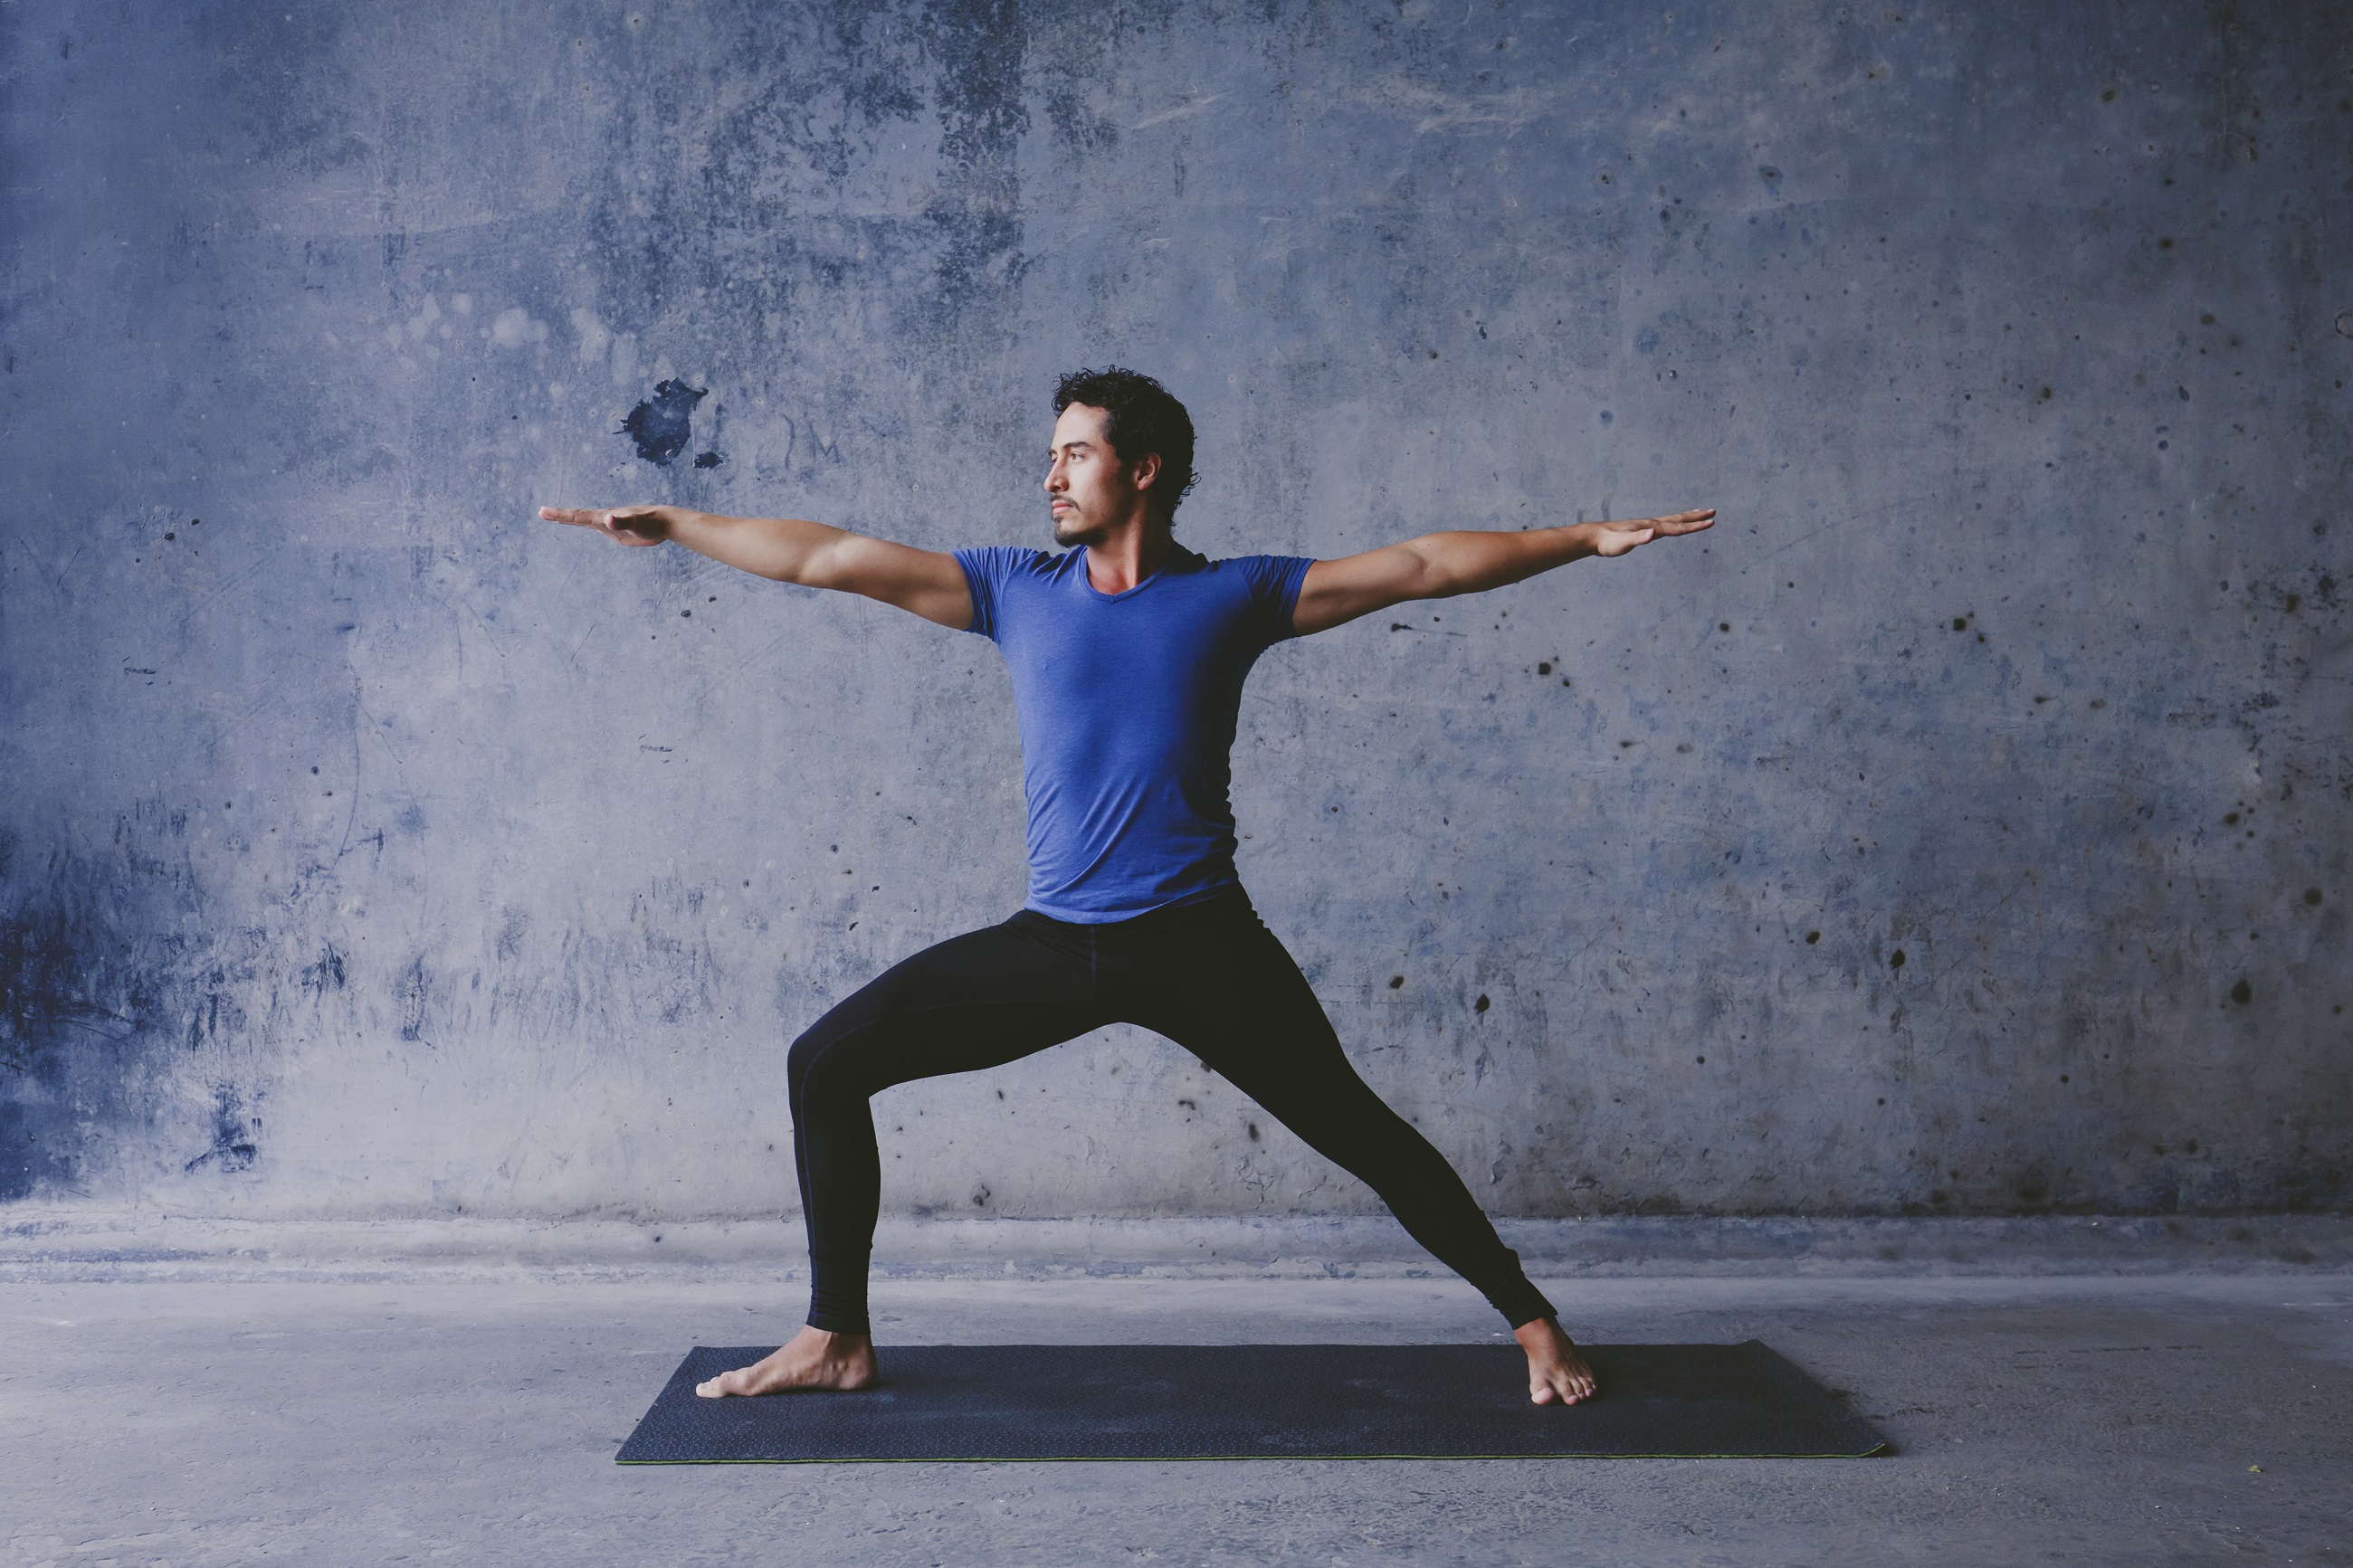 Praticando ioga para controlar a ansiedade